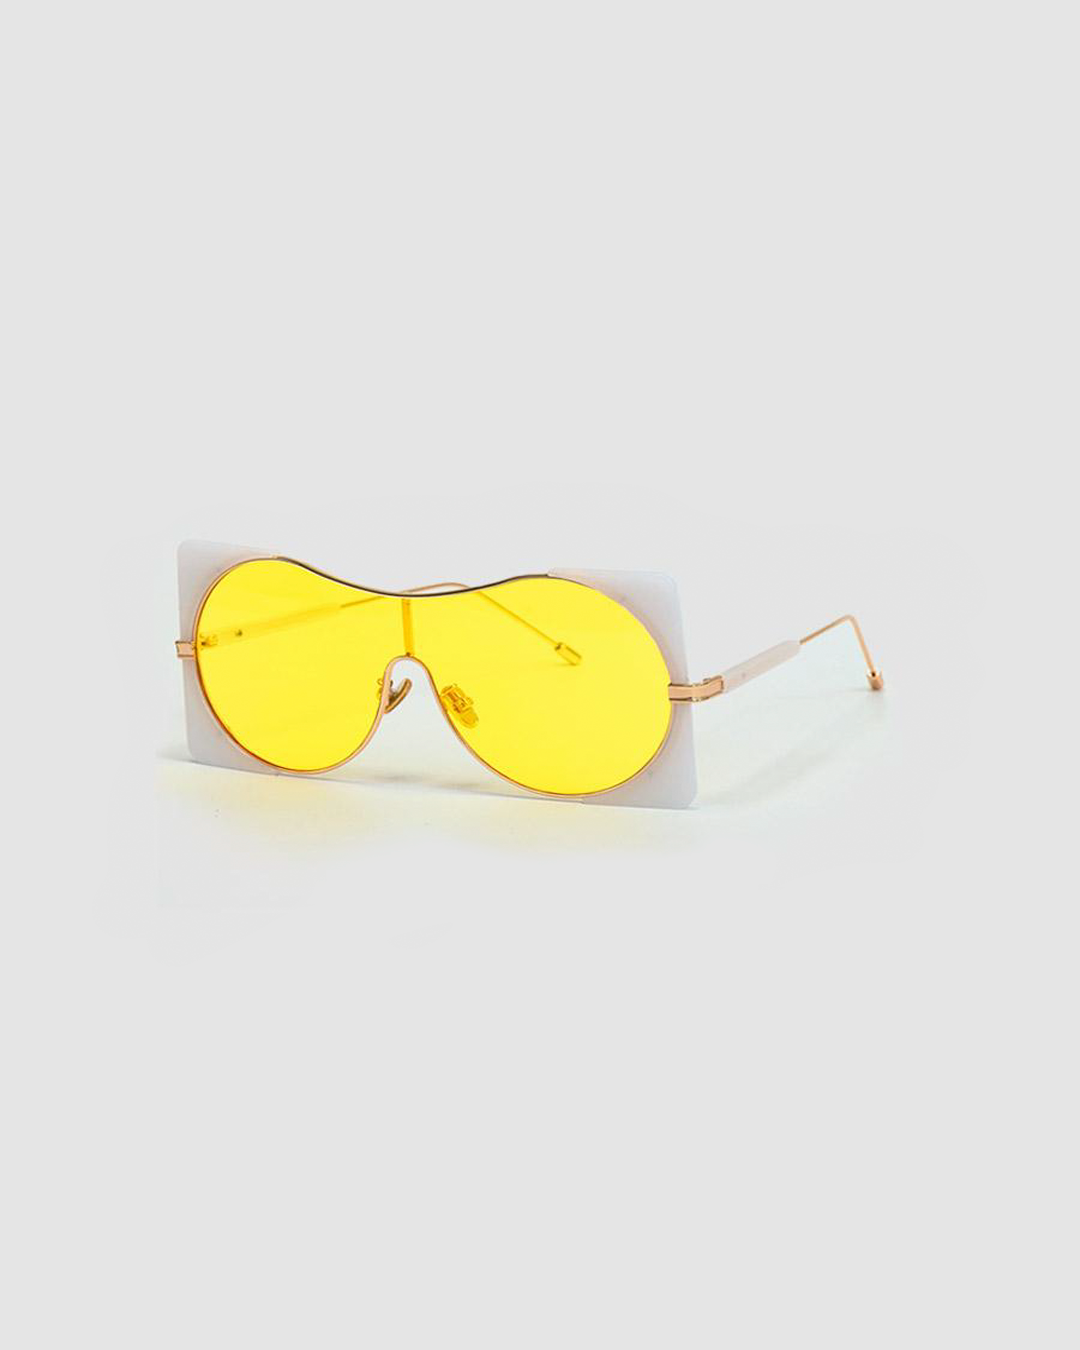 Piximax Sunglasses